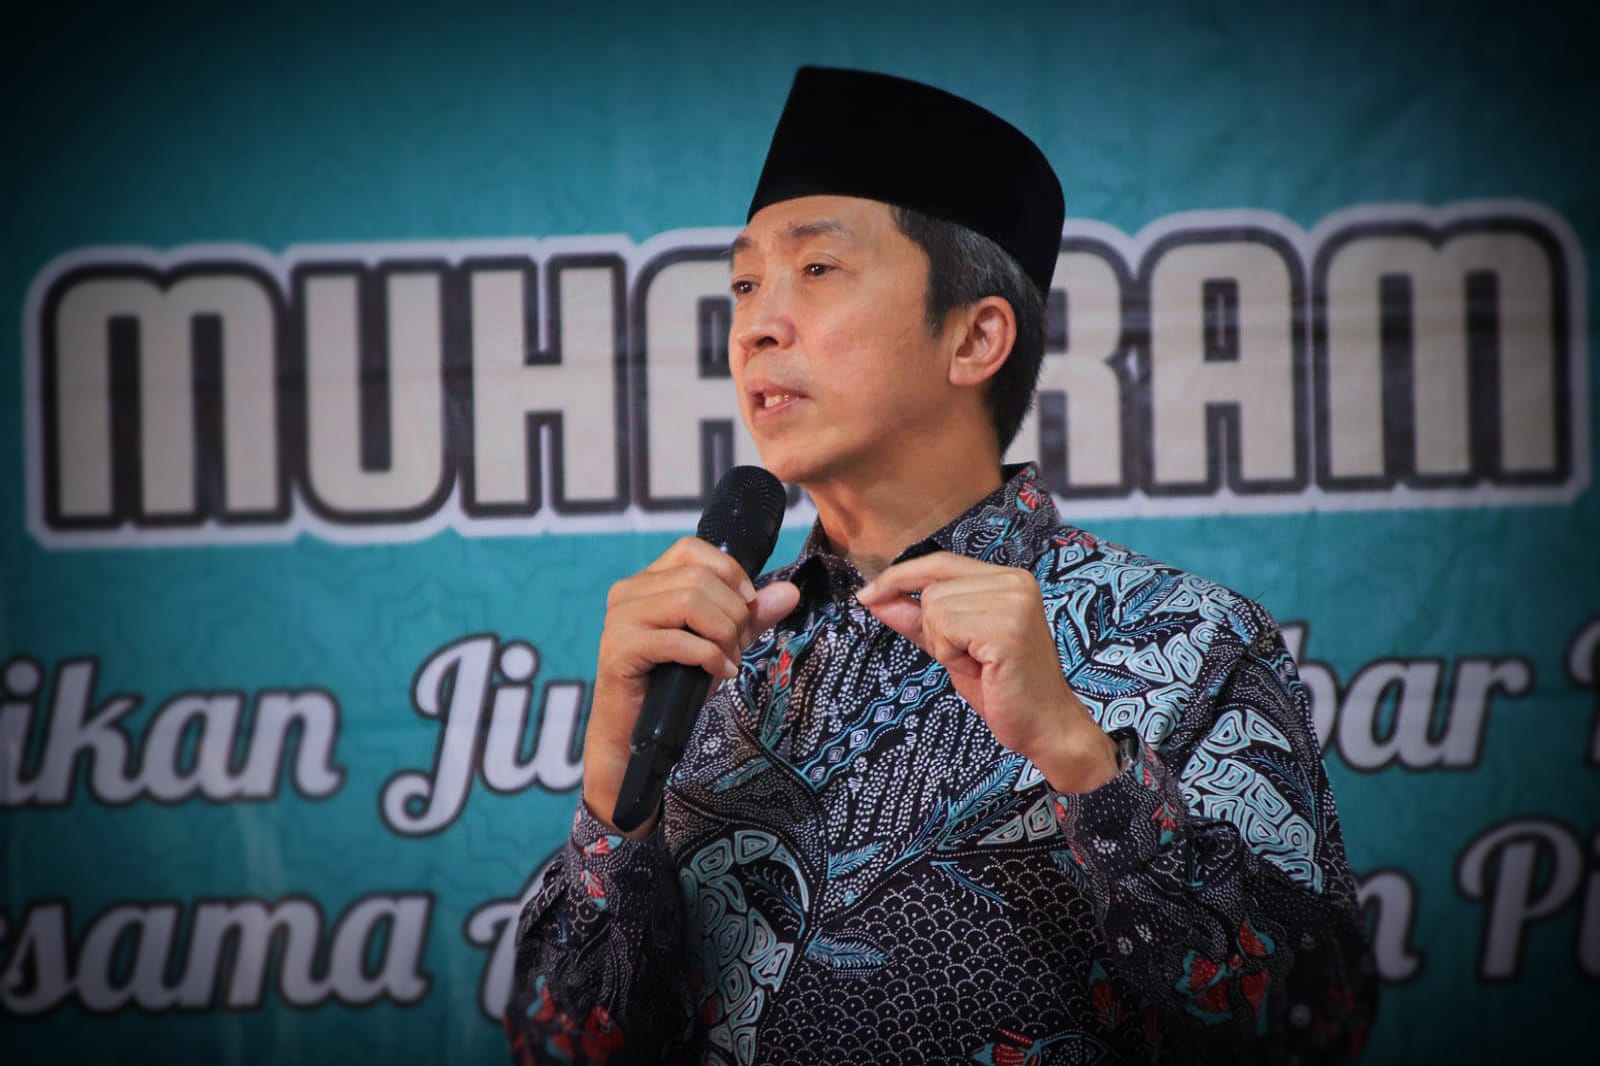 Wakil Wali Kota Bogor Dedie A Rachim, menjelaskan persiapan Pemkot Bogor dalam mengantisipasi virus cacar monyet. (Yudha Prananda / Jabar Ekspres)